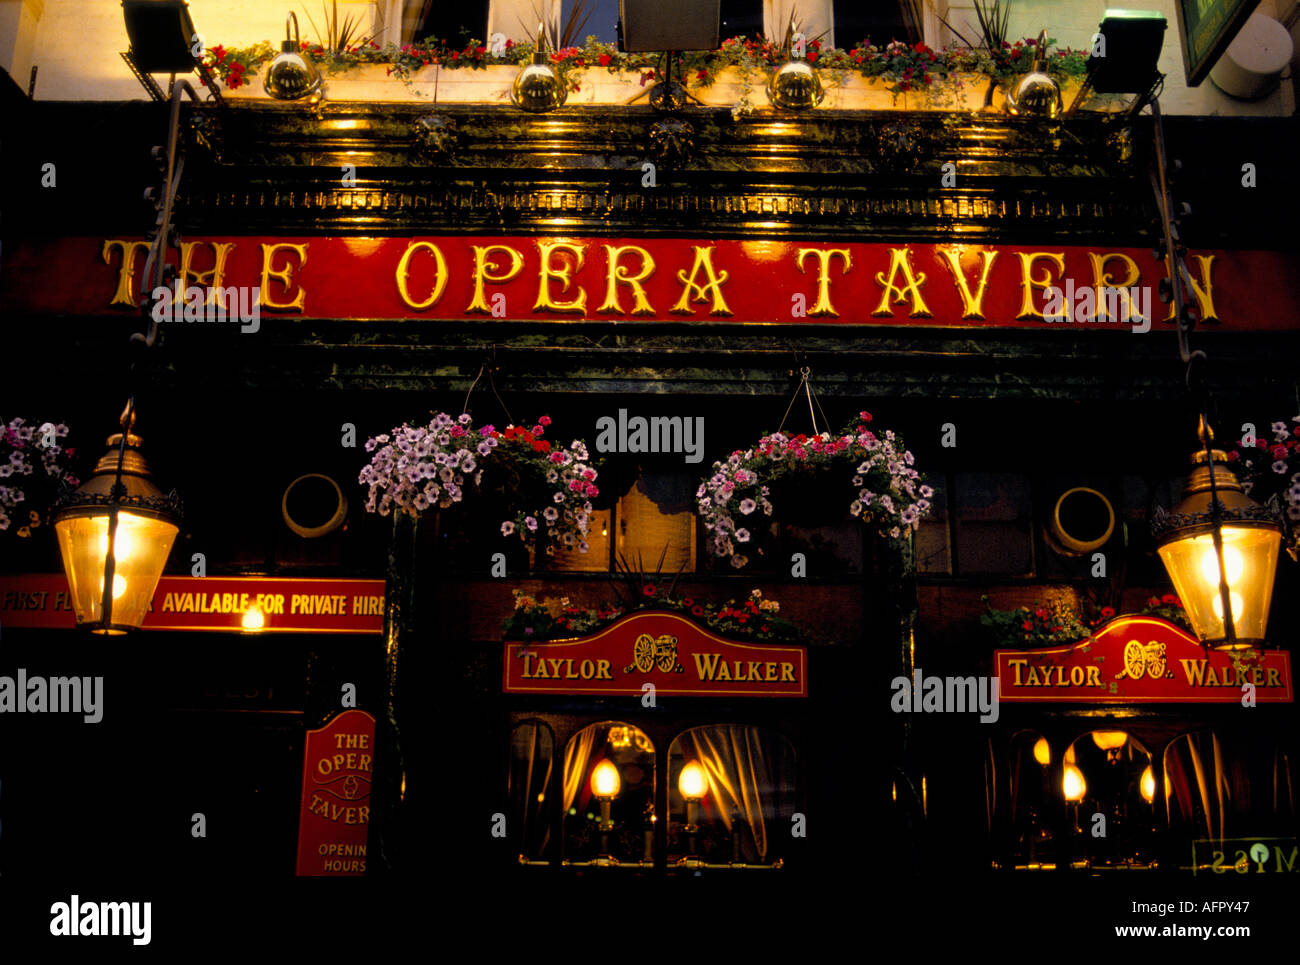 Opera Tavern Covent Garden West End Londra 2006. Pub segno illuminato su sera. SYKES HOMER del 2000 Foto Stock